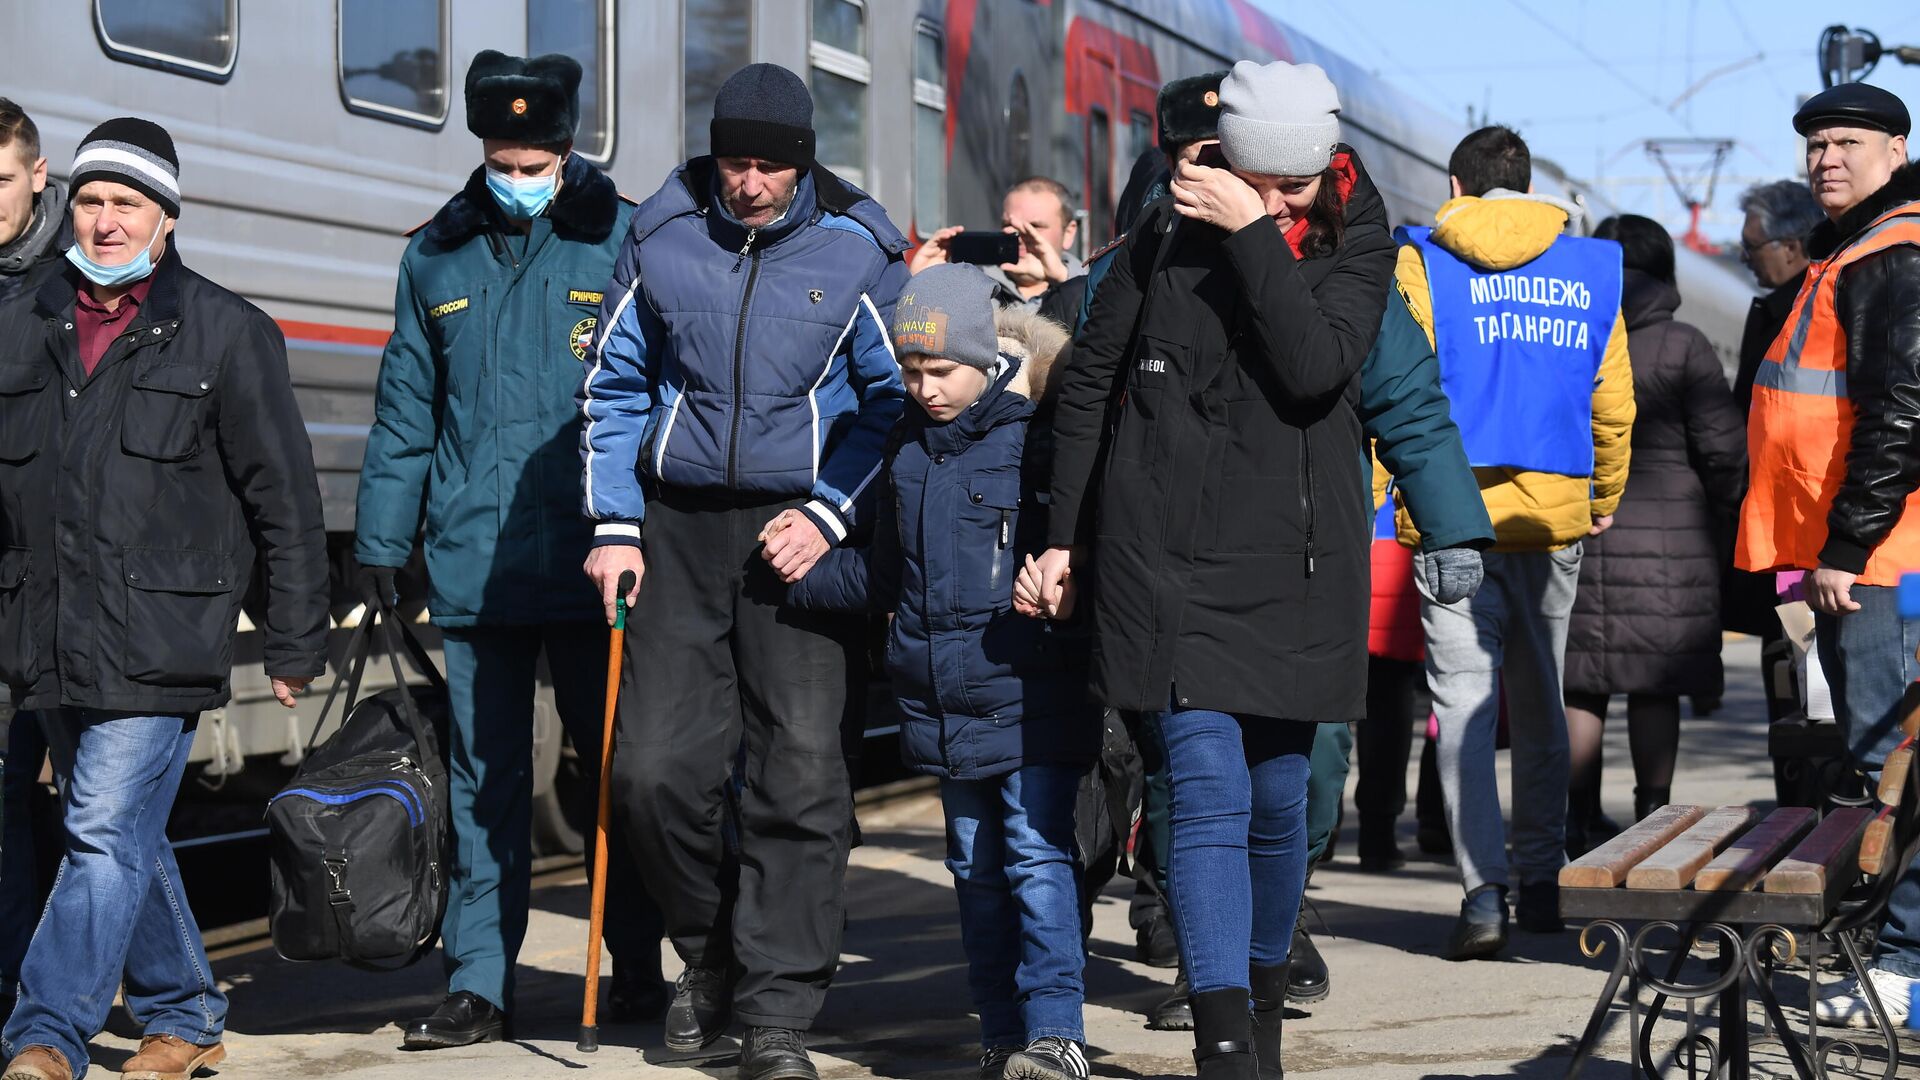 Беженцы из Донбасса во время посадки на поезд, следующий в Белгород, на железнодорожном вокзале в Таганроге - РИА Новости, 1920, 22.03.2022